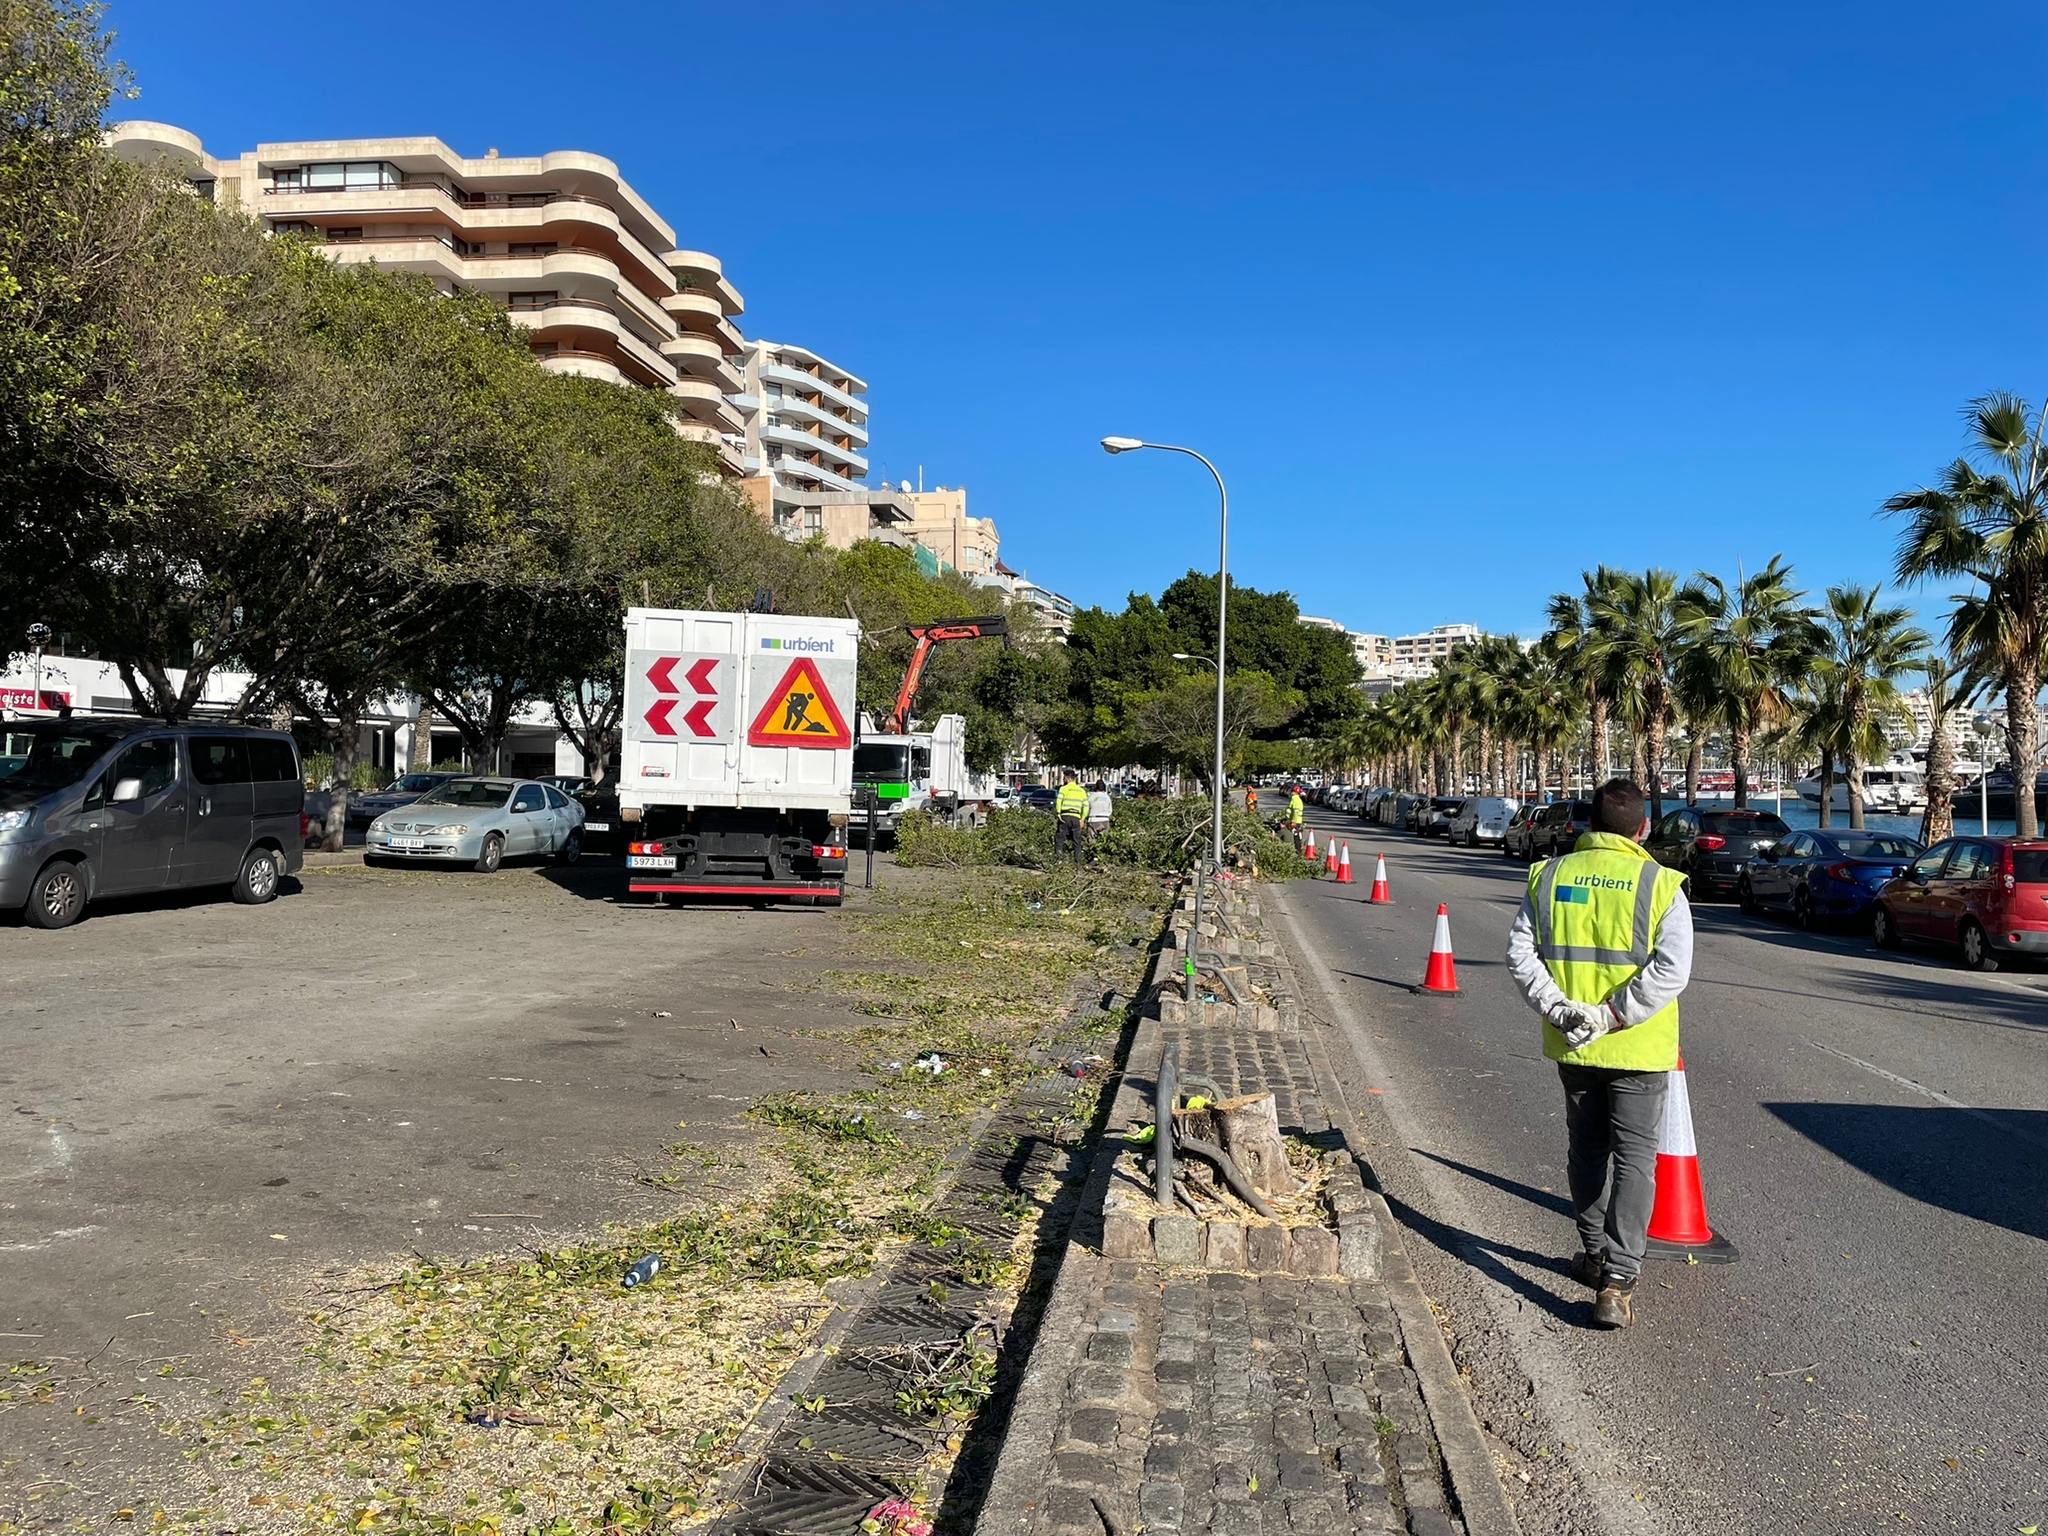 Beginn der Beschneidung und Fällung von Bäumen auf der Promenade in Palma, von denen mehr als 70 umgepflanzt werden sollen